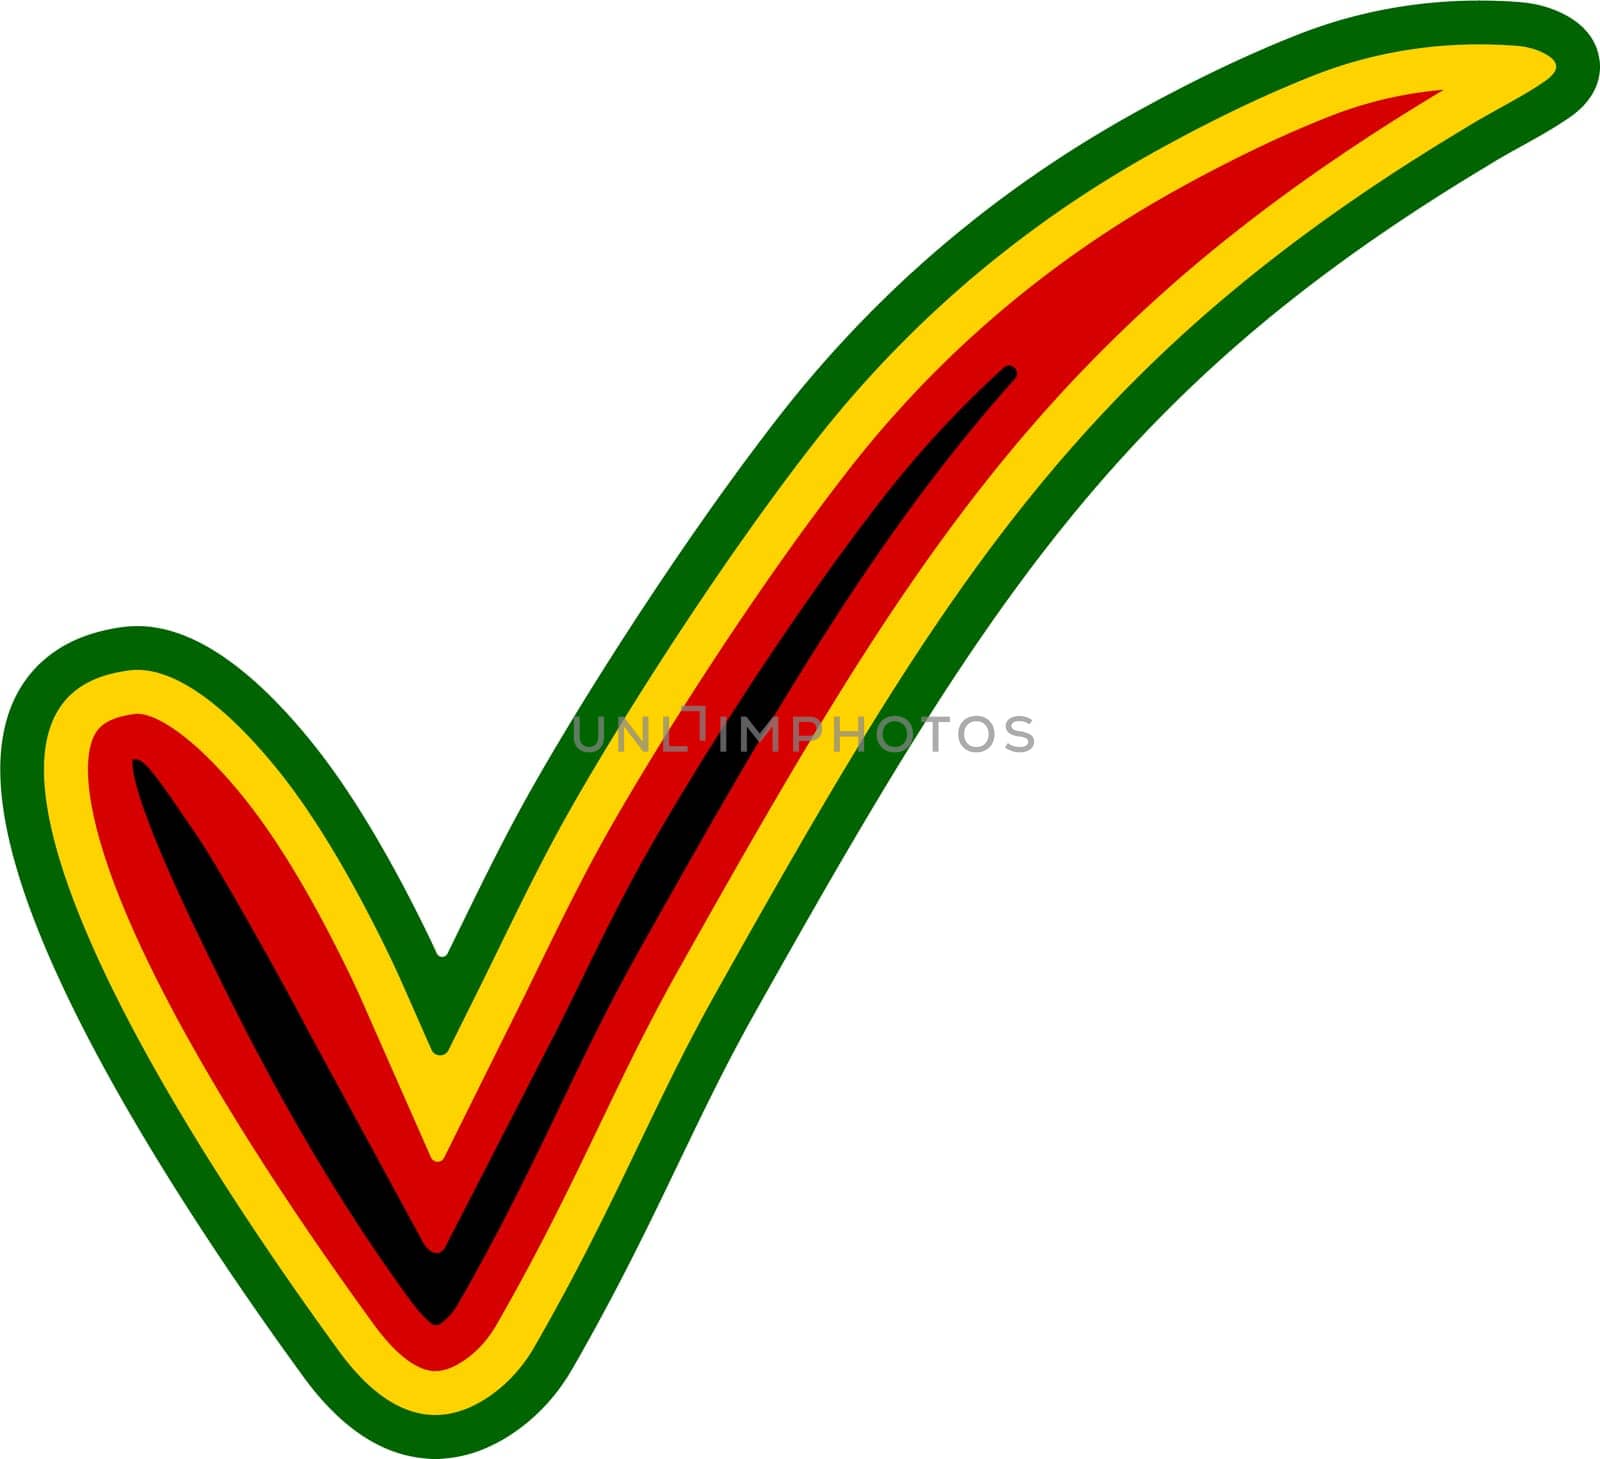 Check mark style Zimbabwe flag symbol elections, voting approval Mugabe